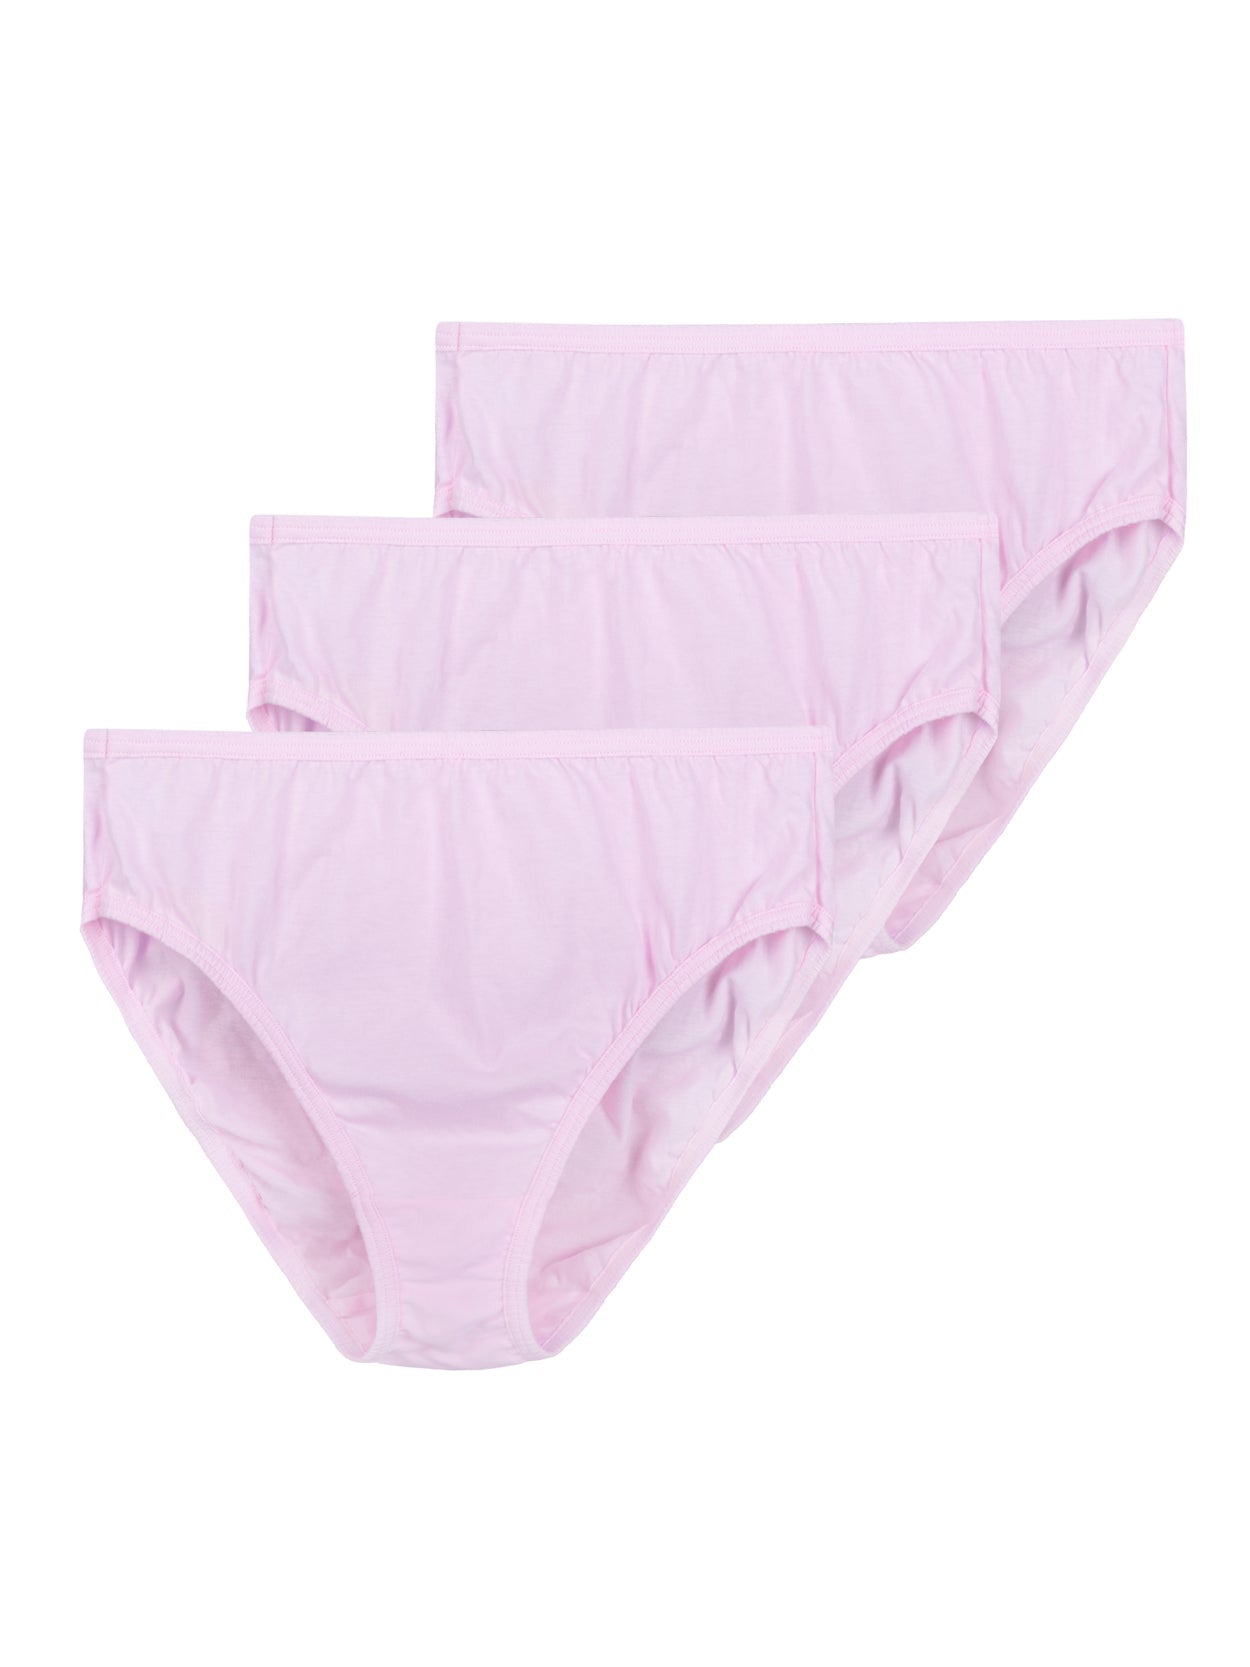 Plus Size Pink Back Closure Underwear.